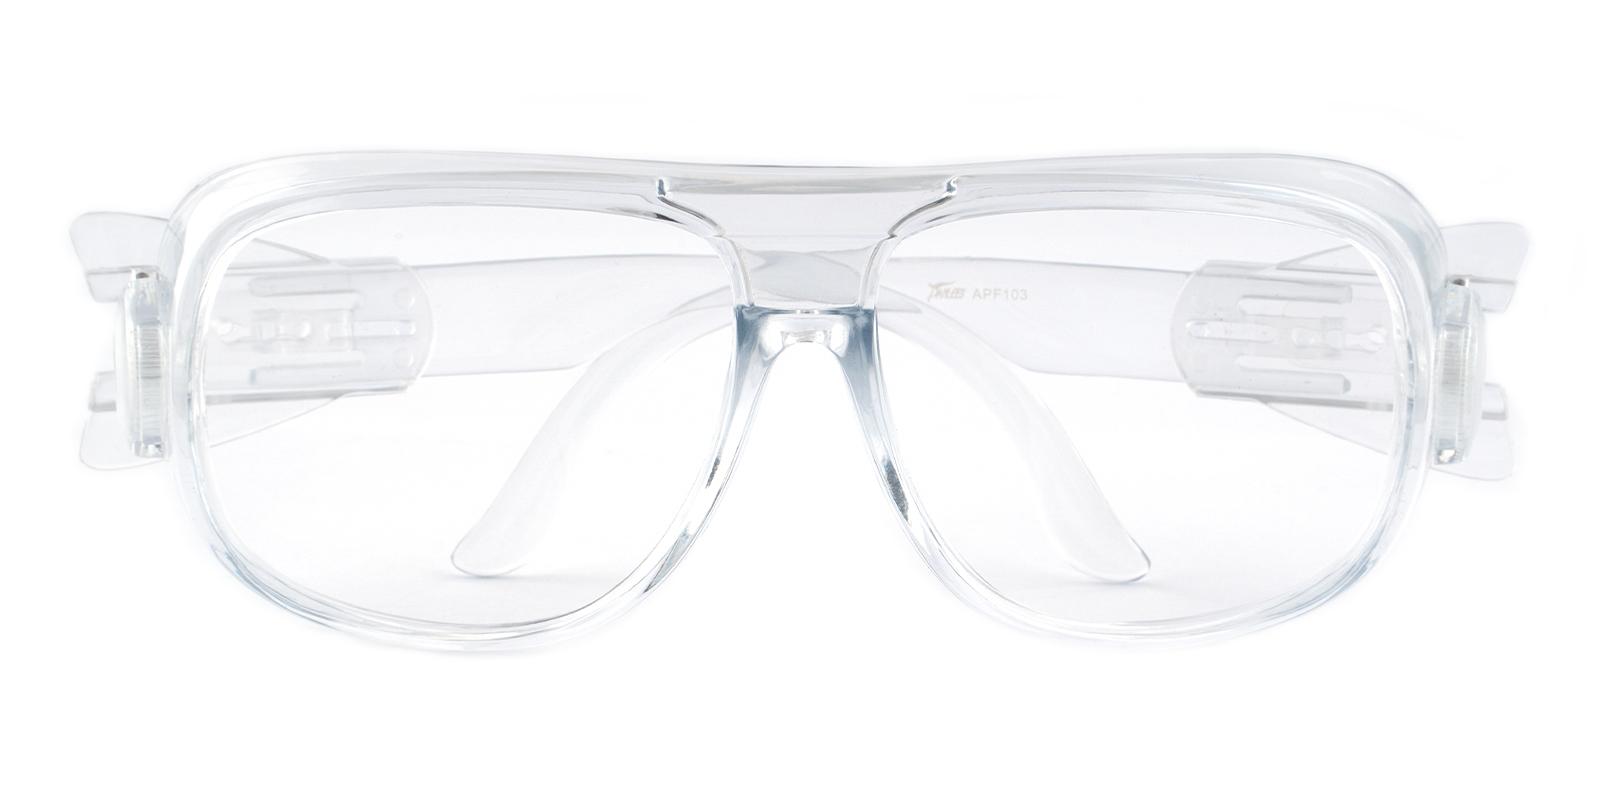 Natalie Translucent Plastic Eyeglasses , SportsGlasses , UniversalBridgeFit Frames from ABBE Glasses